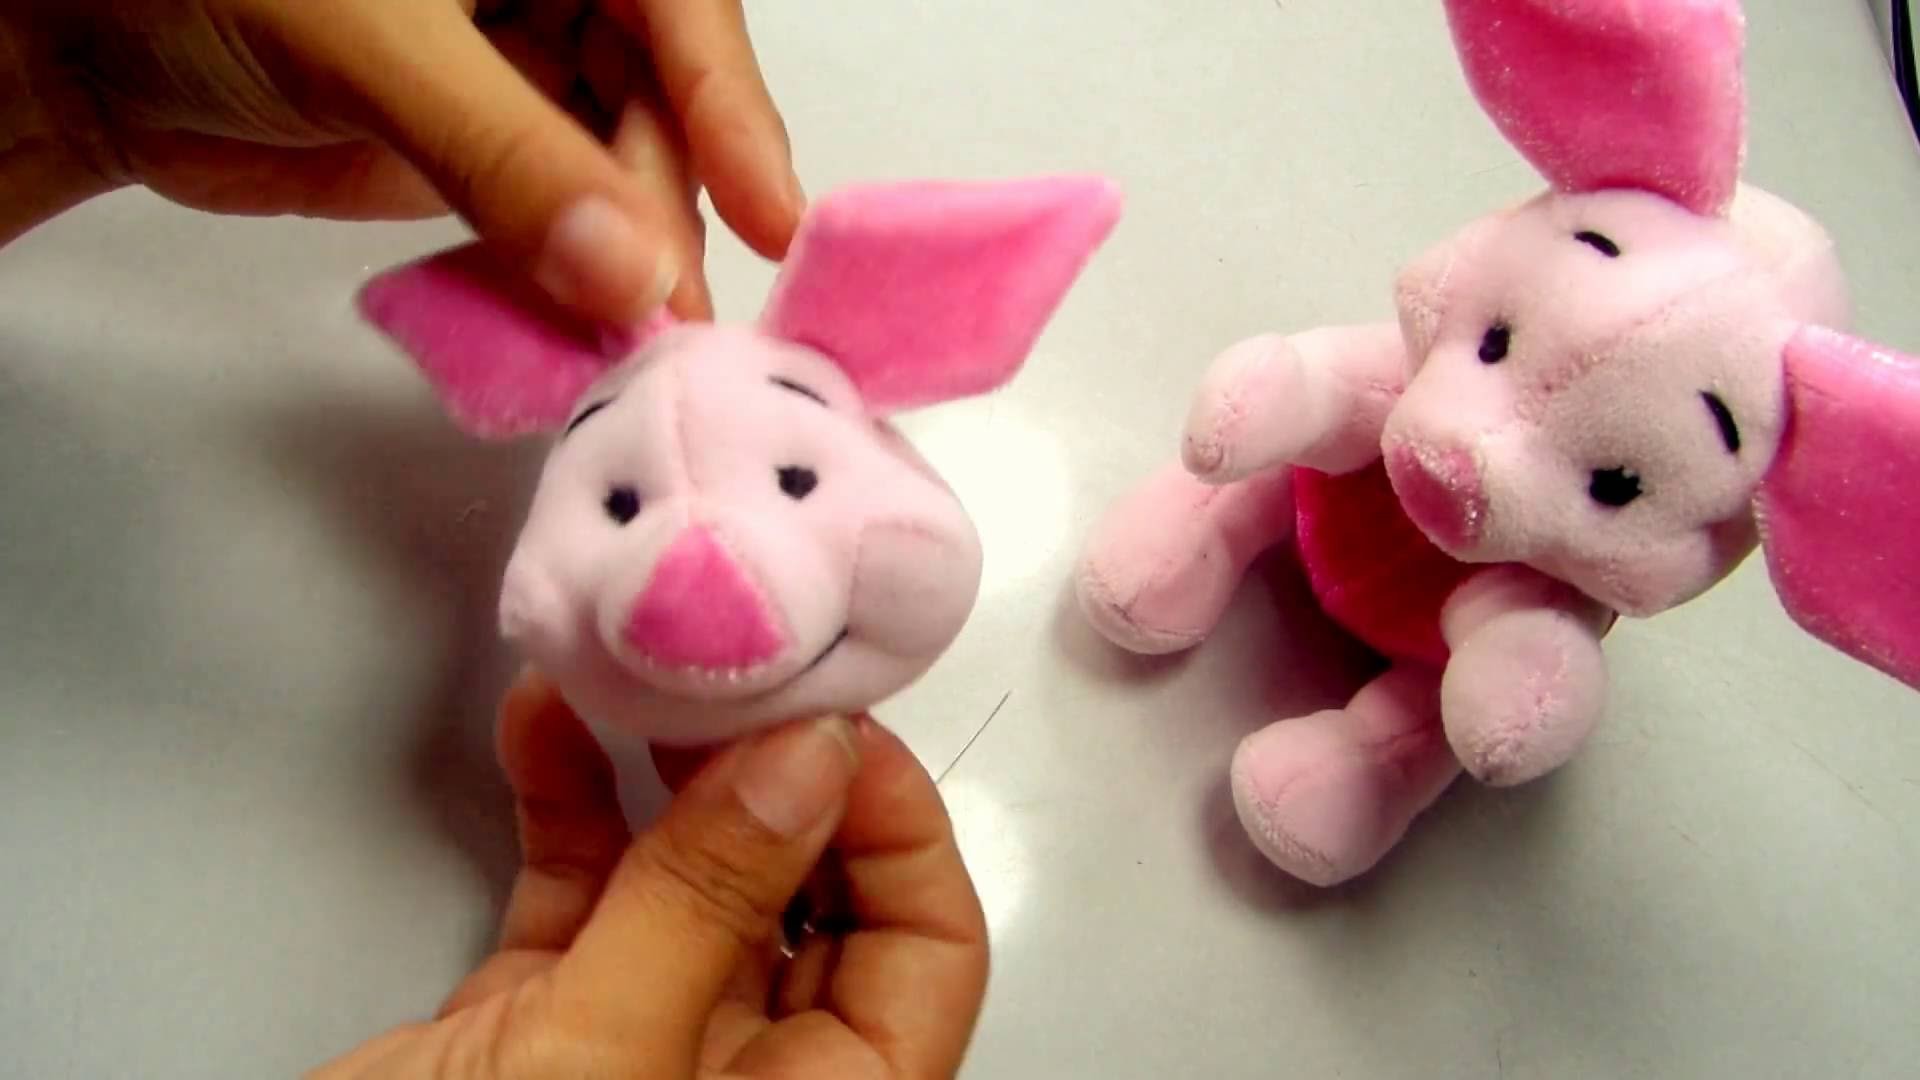 Como hacer peluche de Piglet | How to make stuffed of Piglet - Loou